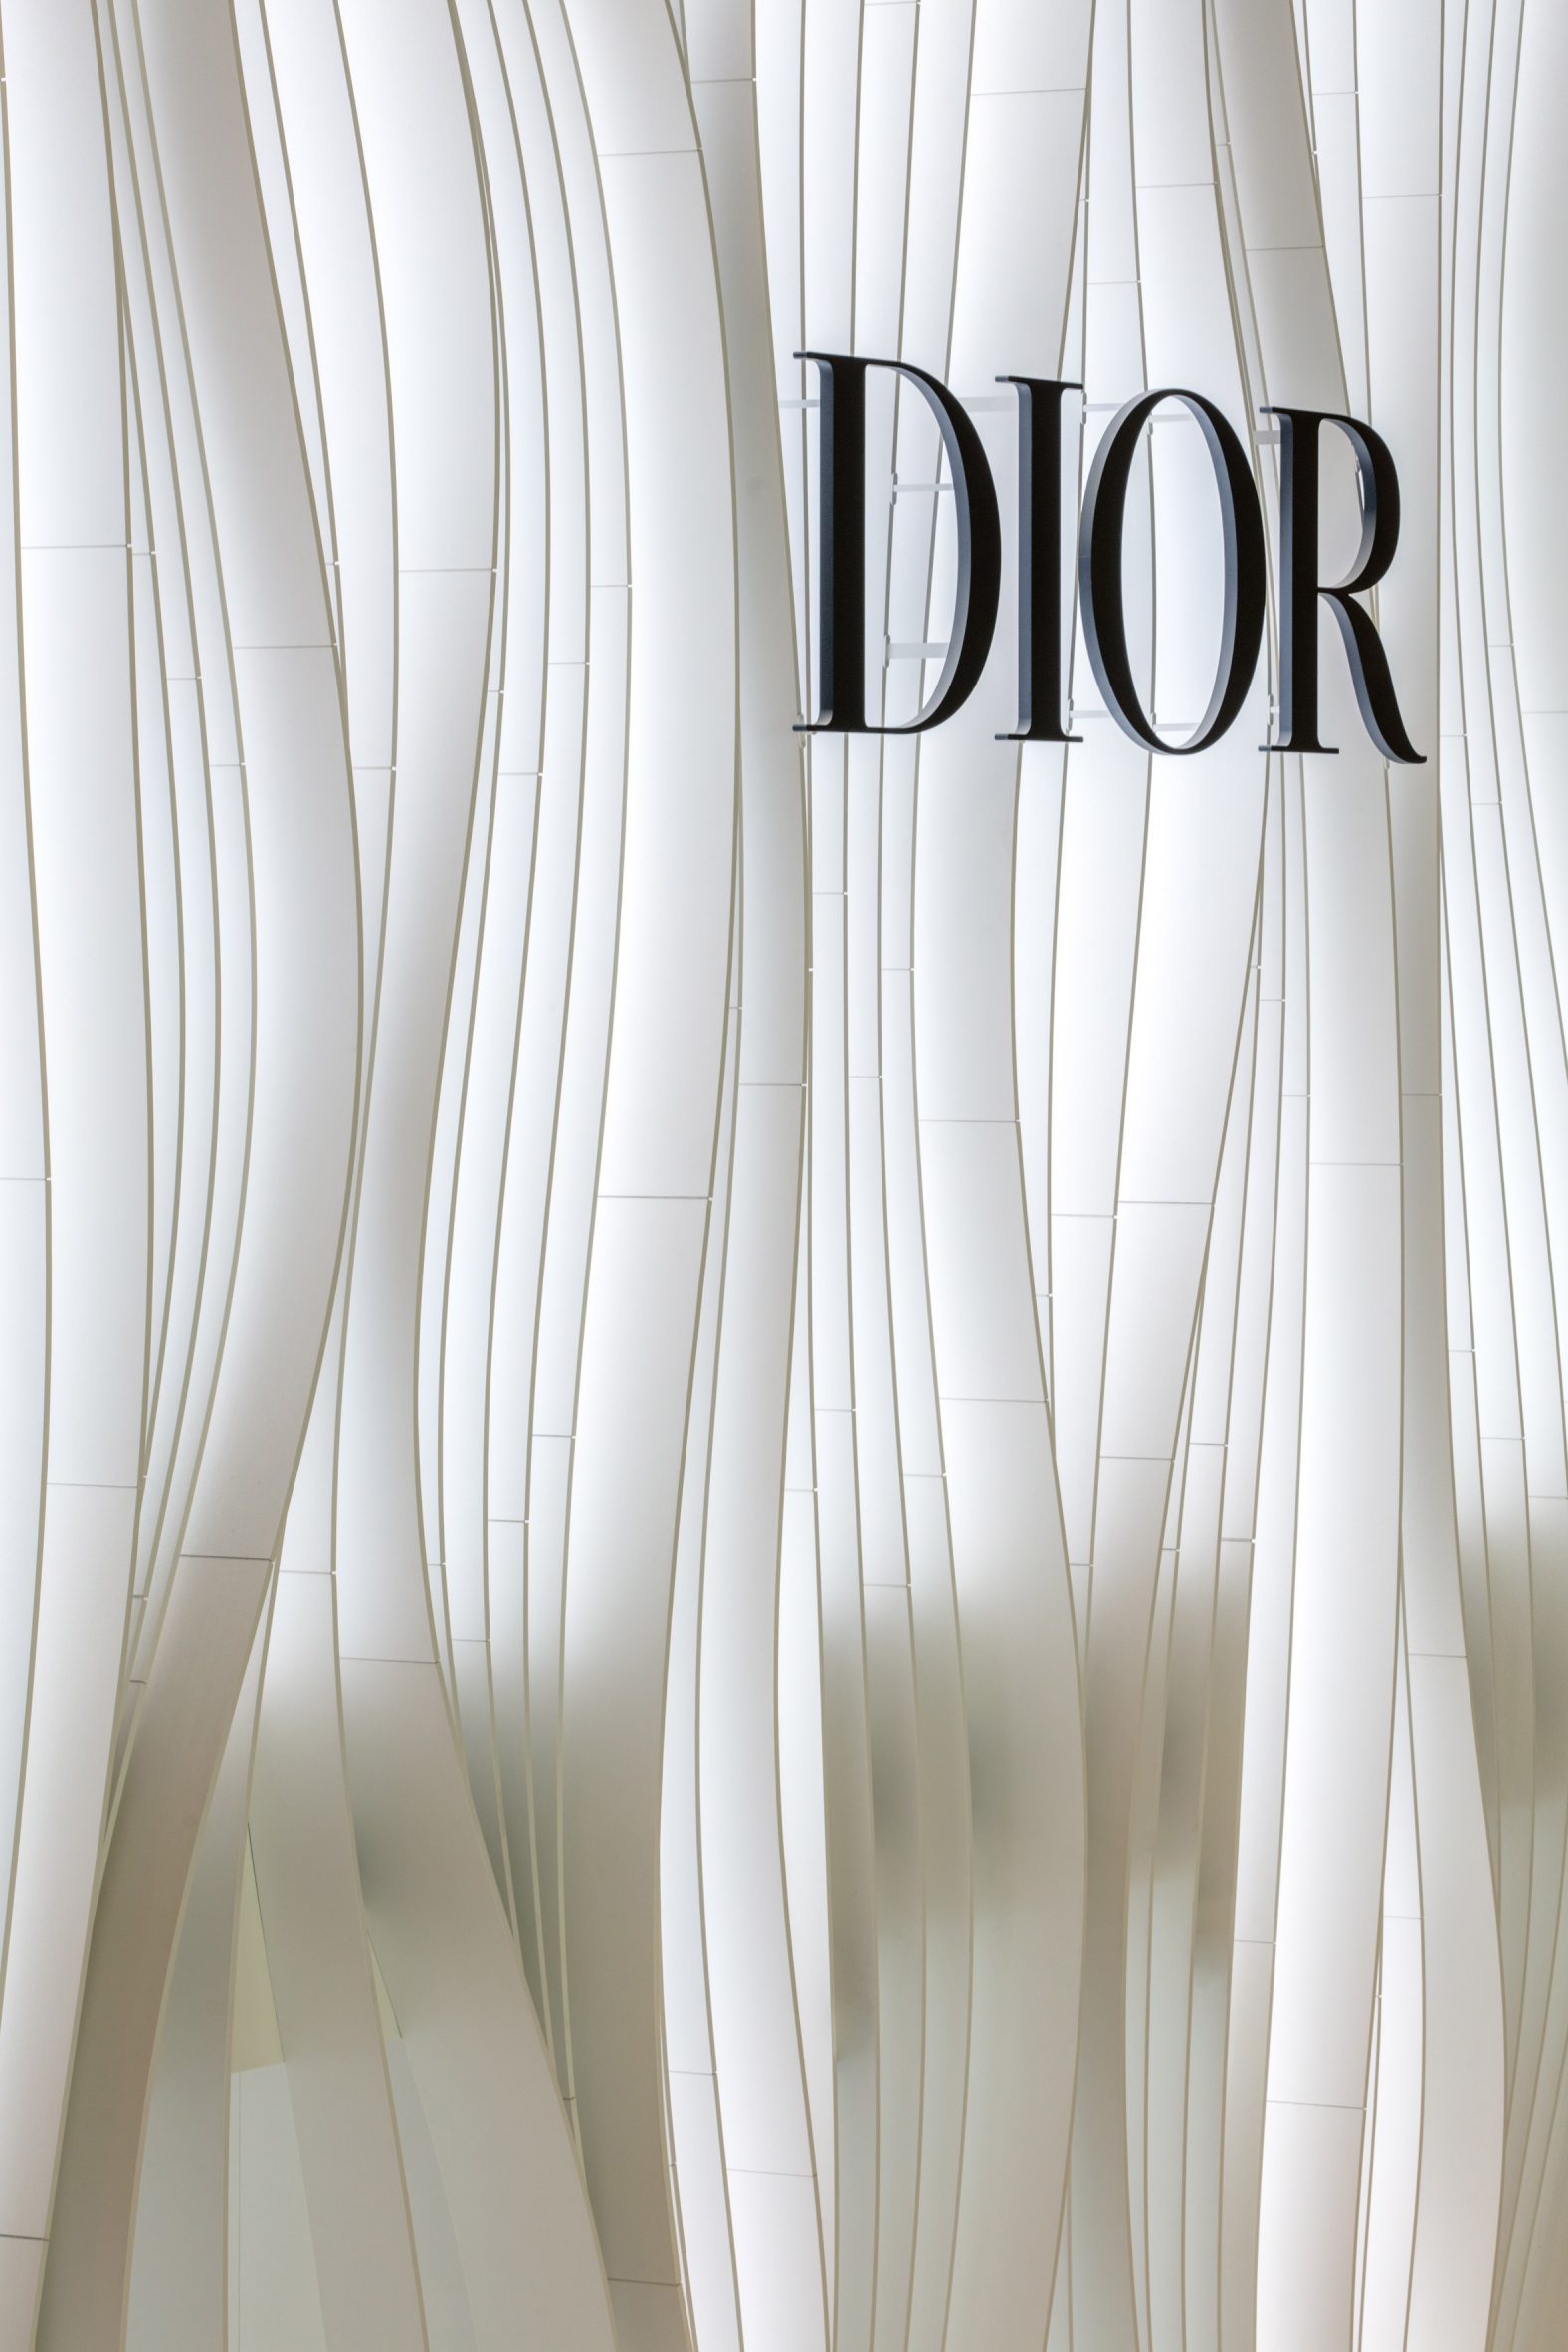 Dior logo on a backlight facade